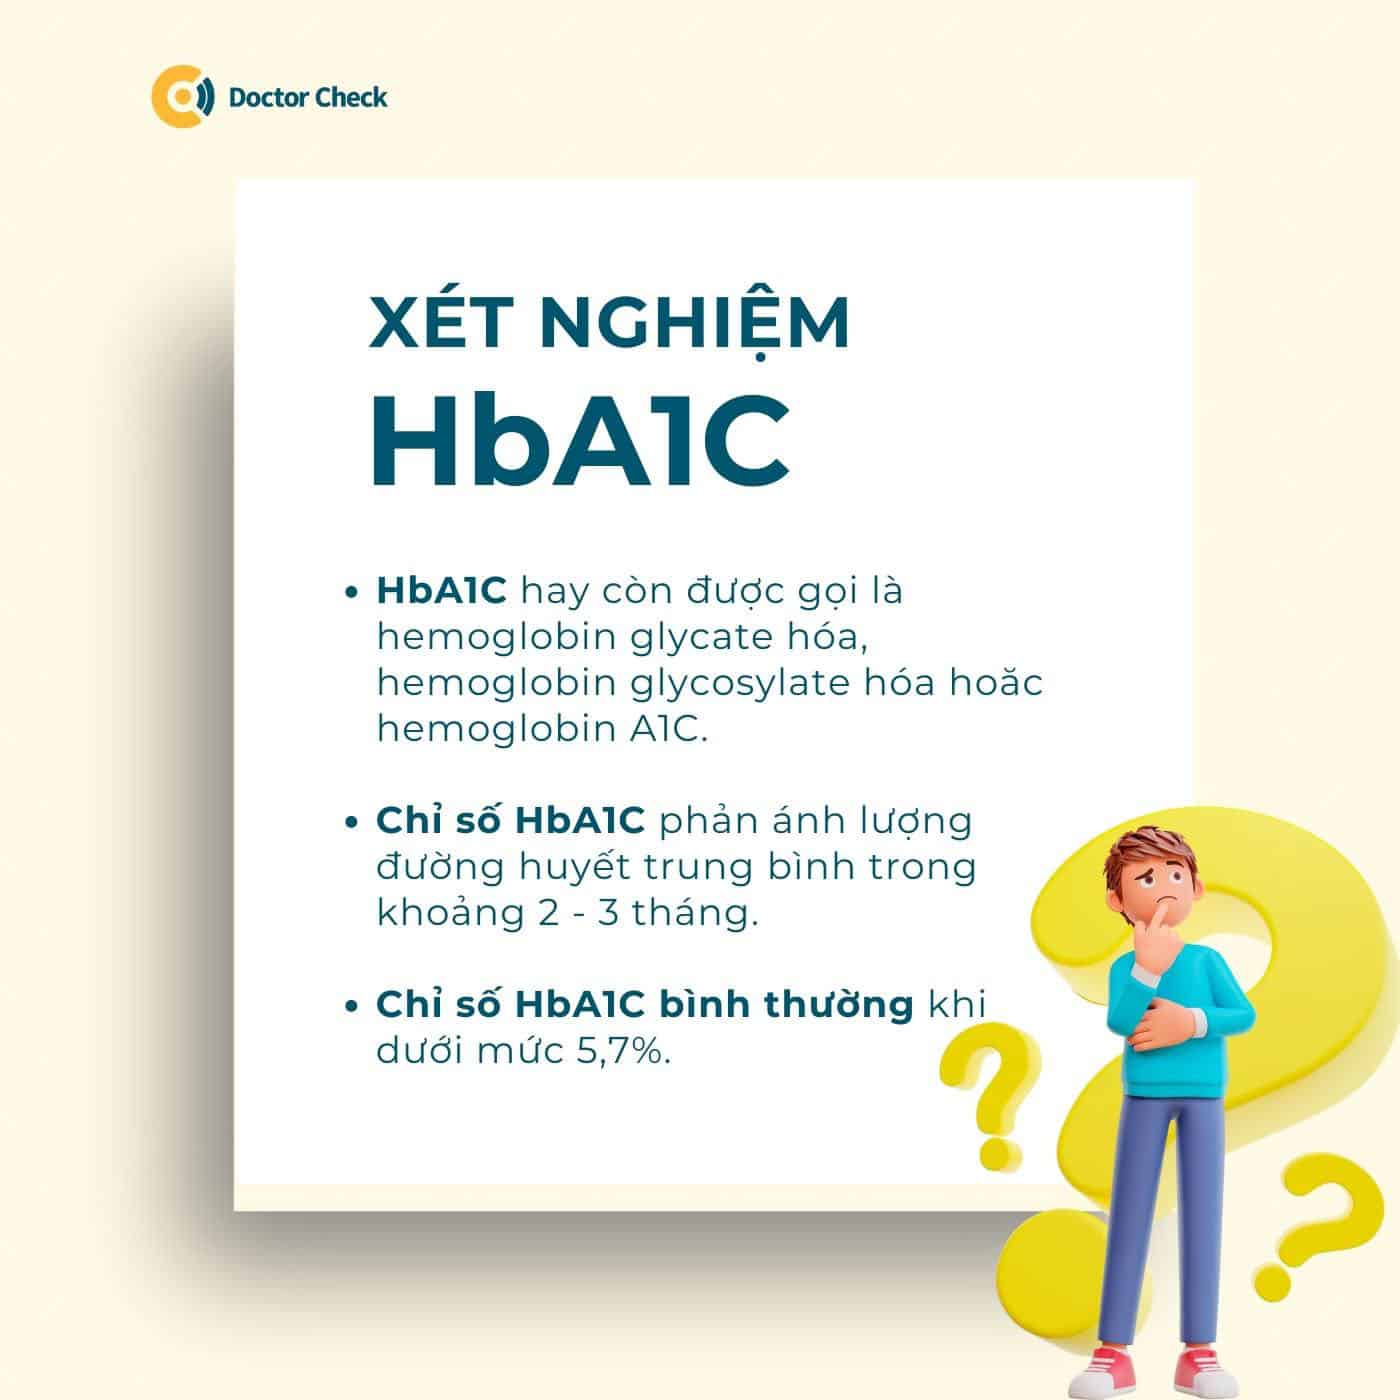 HbA1C là gì? Bạn có biết